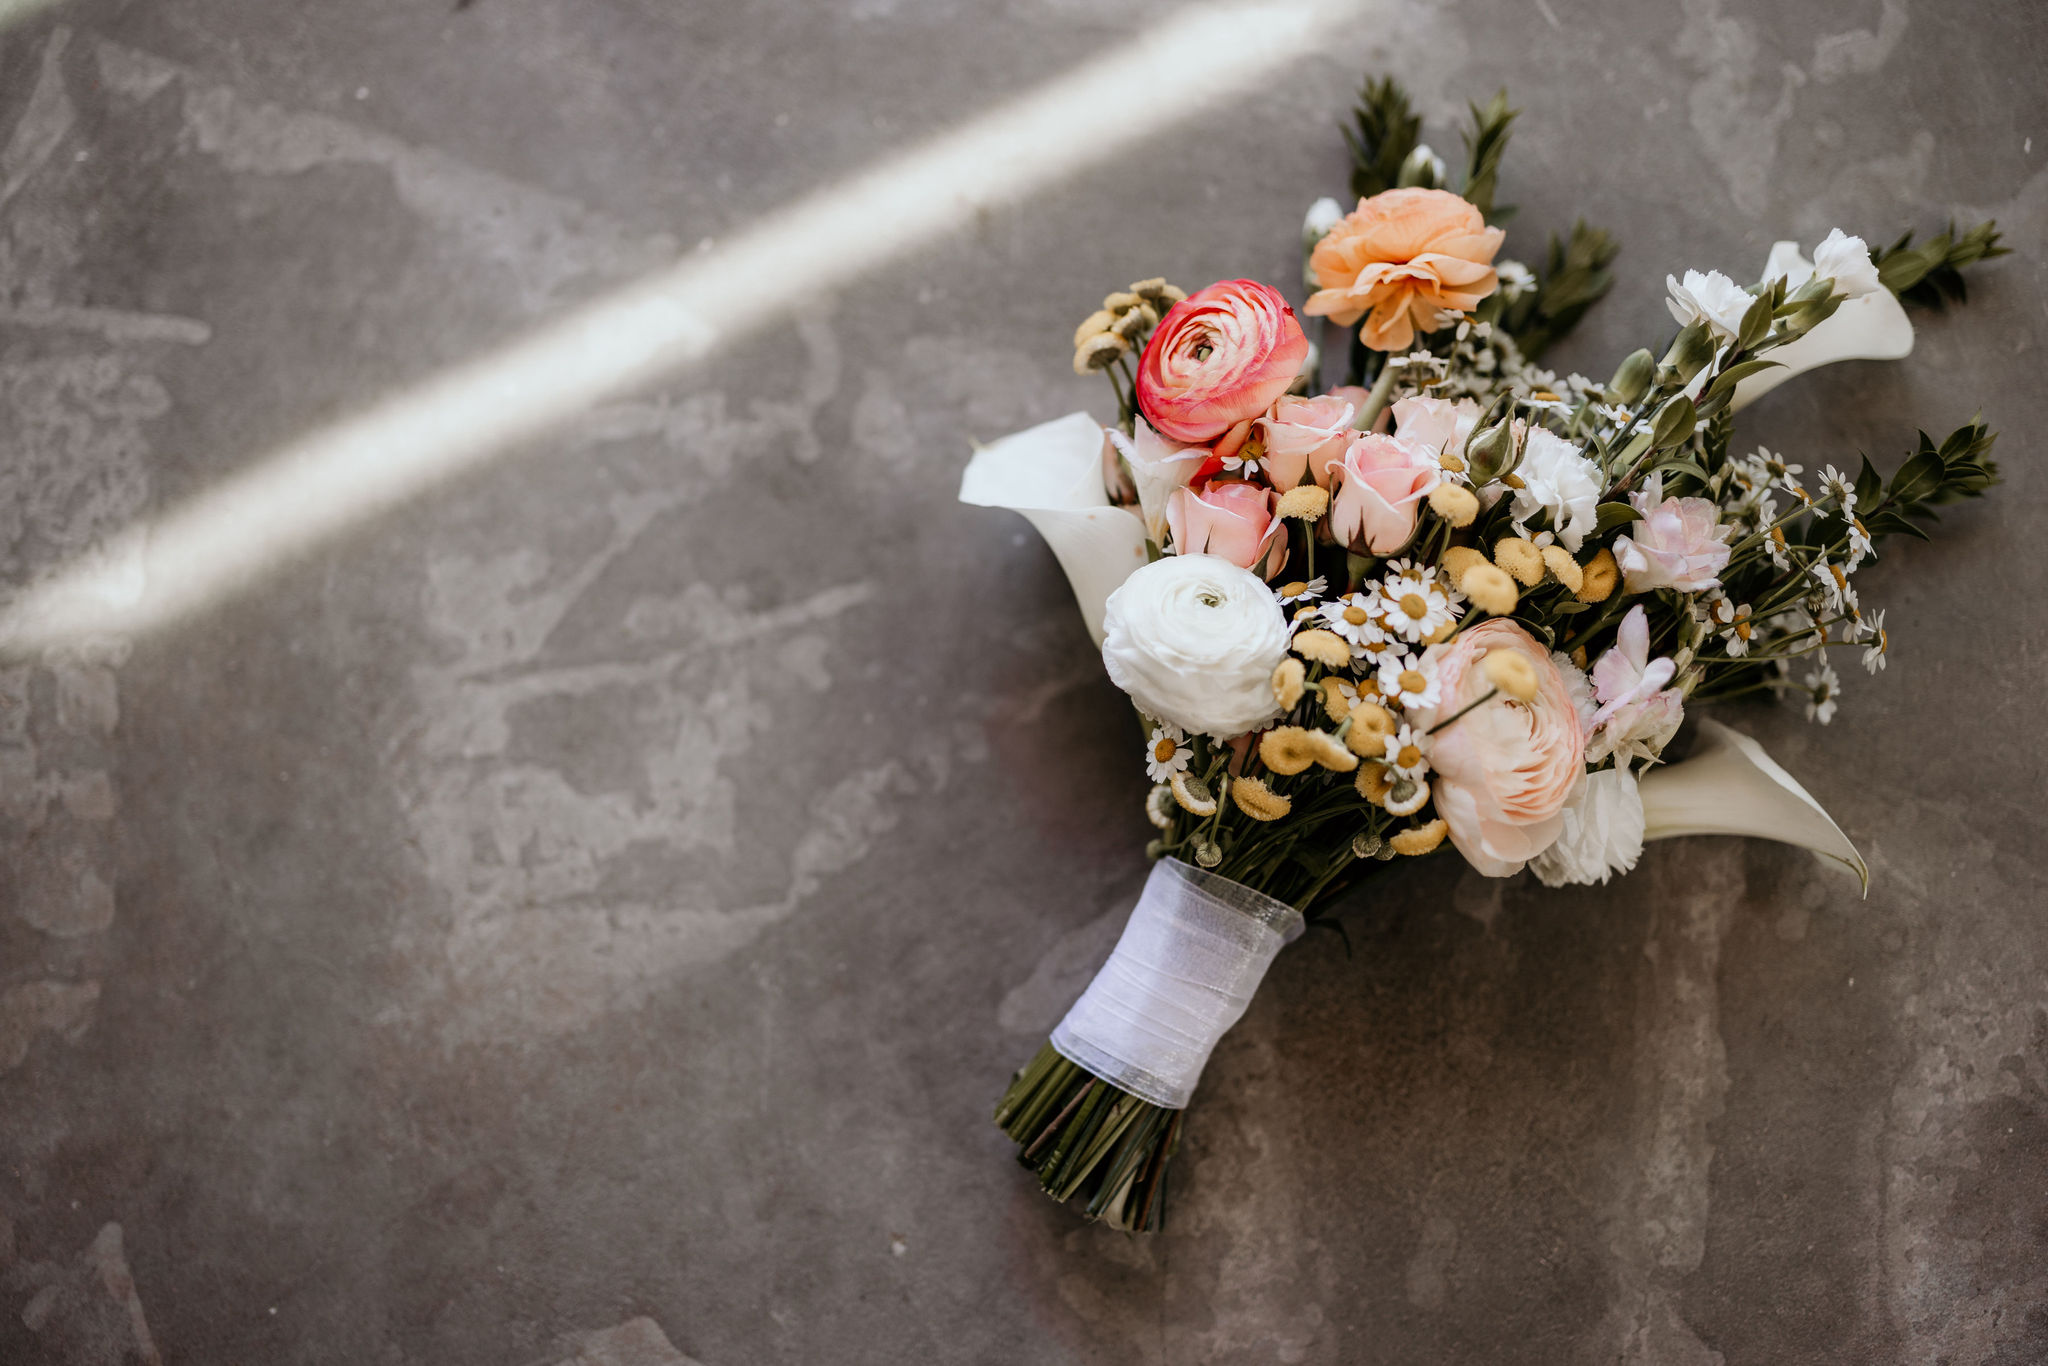 wedding bouquet, made by colorado vendor, sits on concrete.